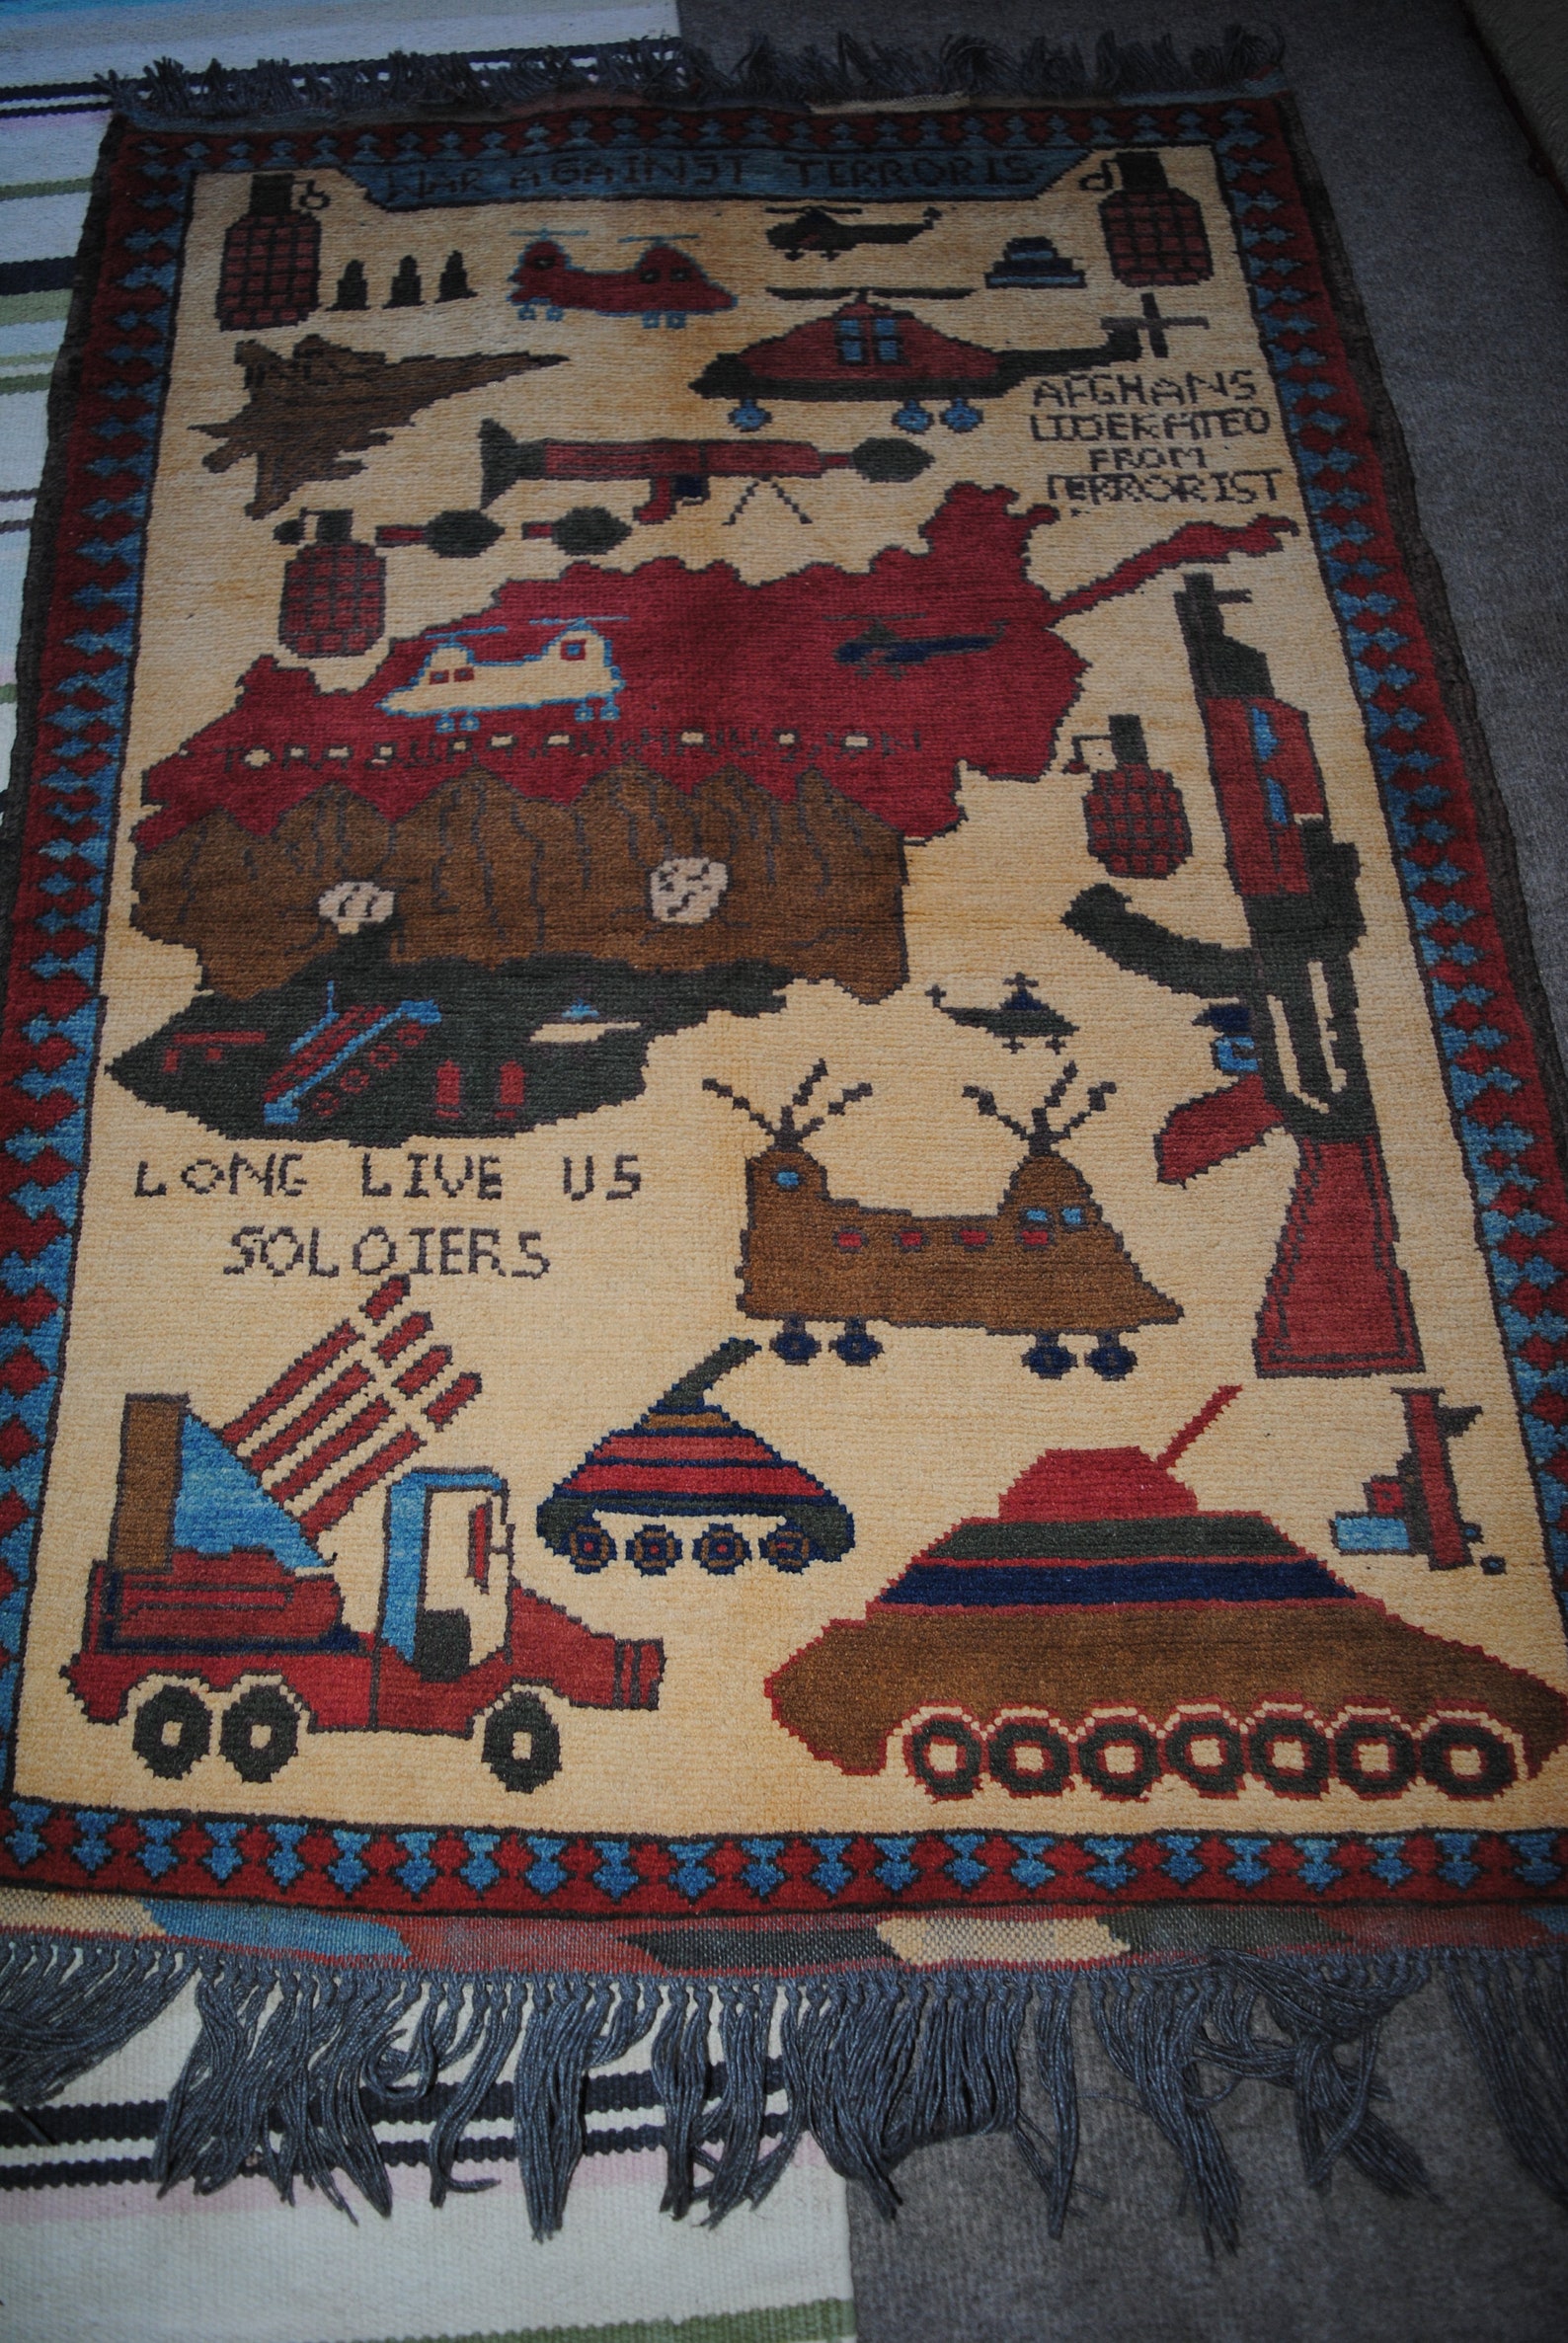 Afghan war rug hand made vintage war rugs size 93 cm x 69 cm | Etsy